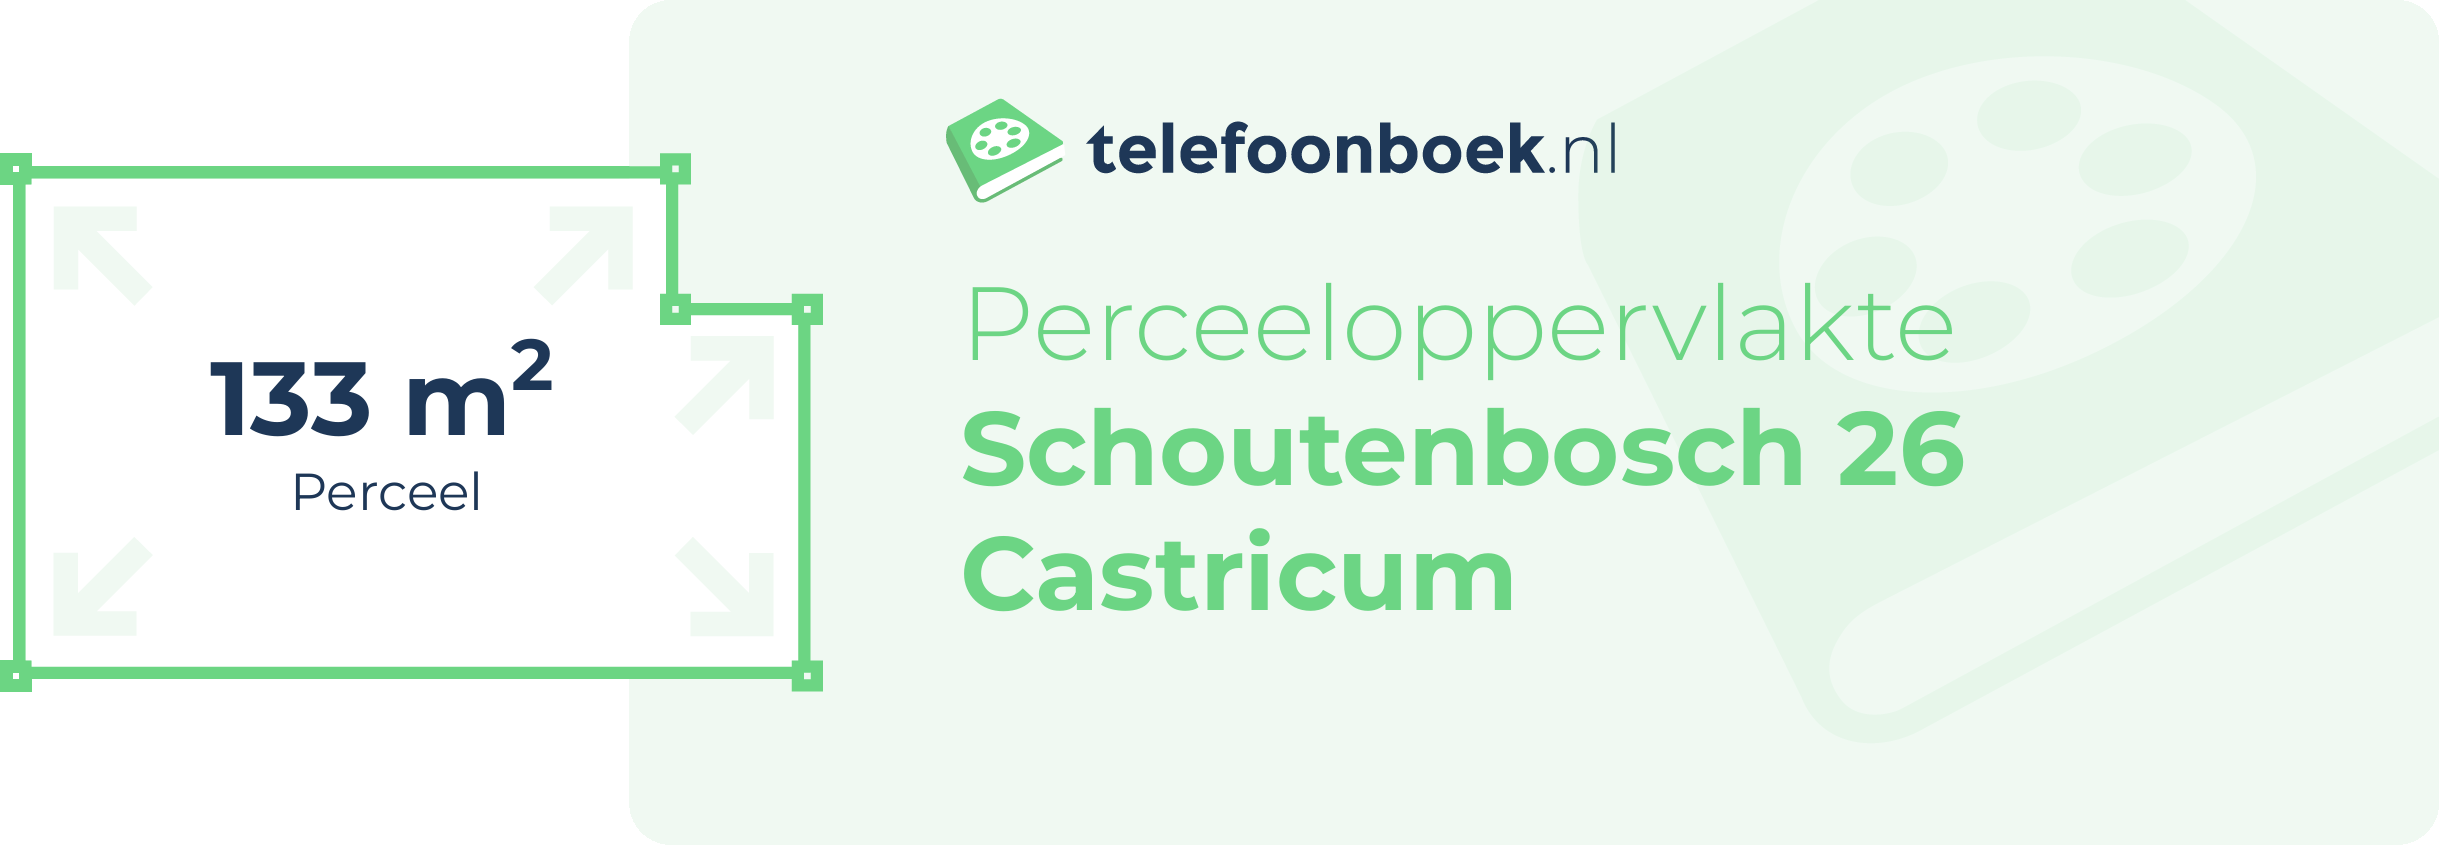 Perceeloppervlakte Schoutenbosch 26 Castricum